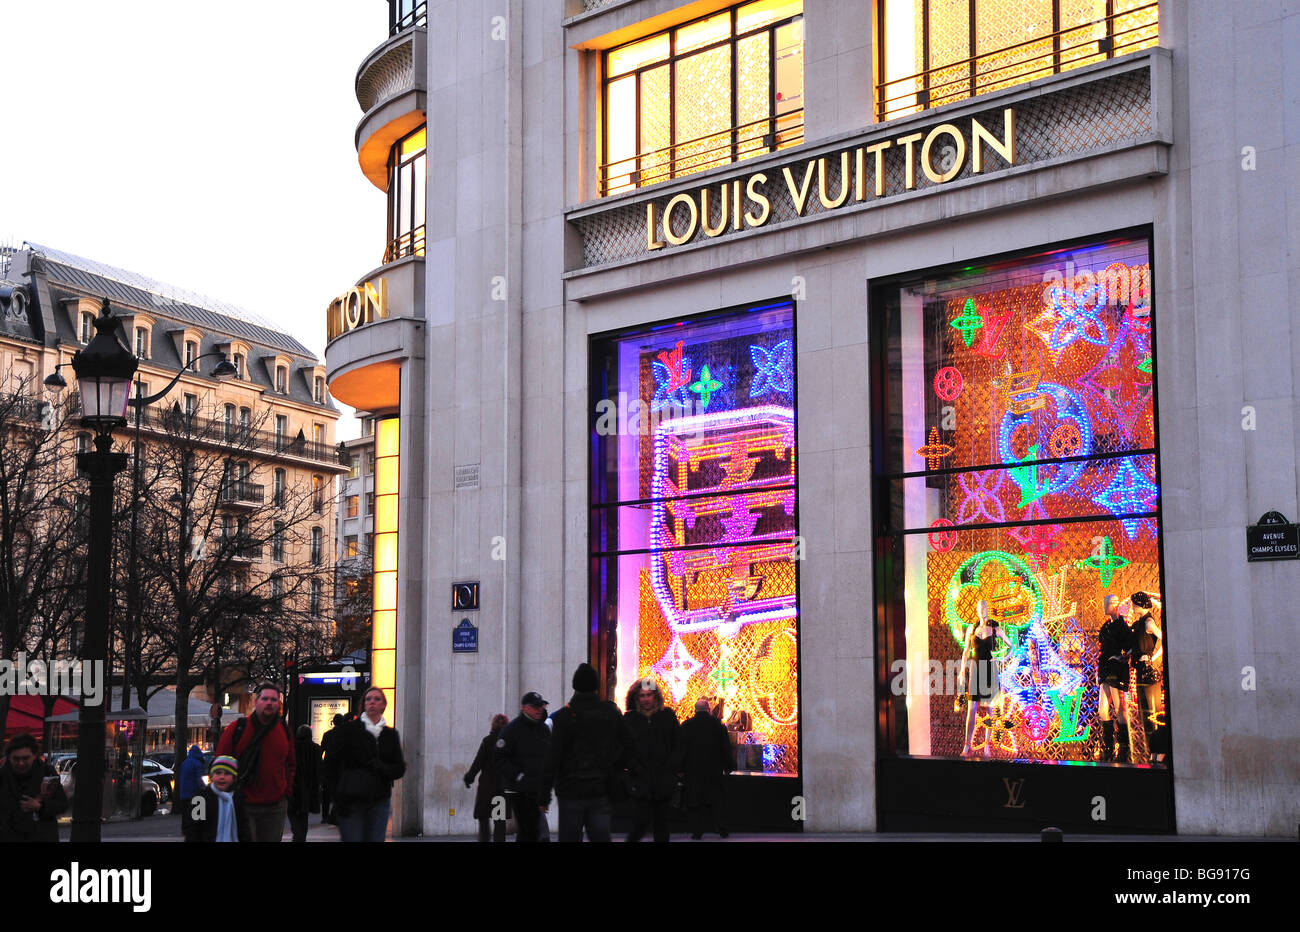 Paris, France, Personnes Shopping, French luxury boutique de mode, Louis Vuitton, Détail, Store ...